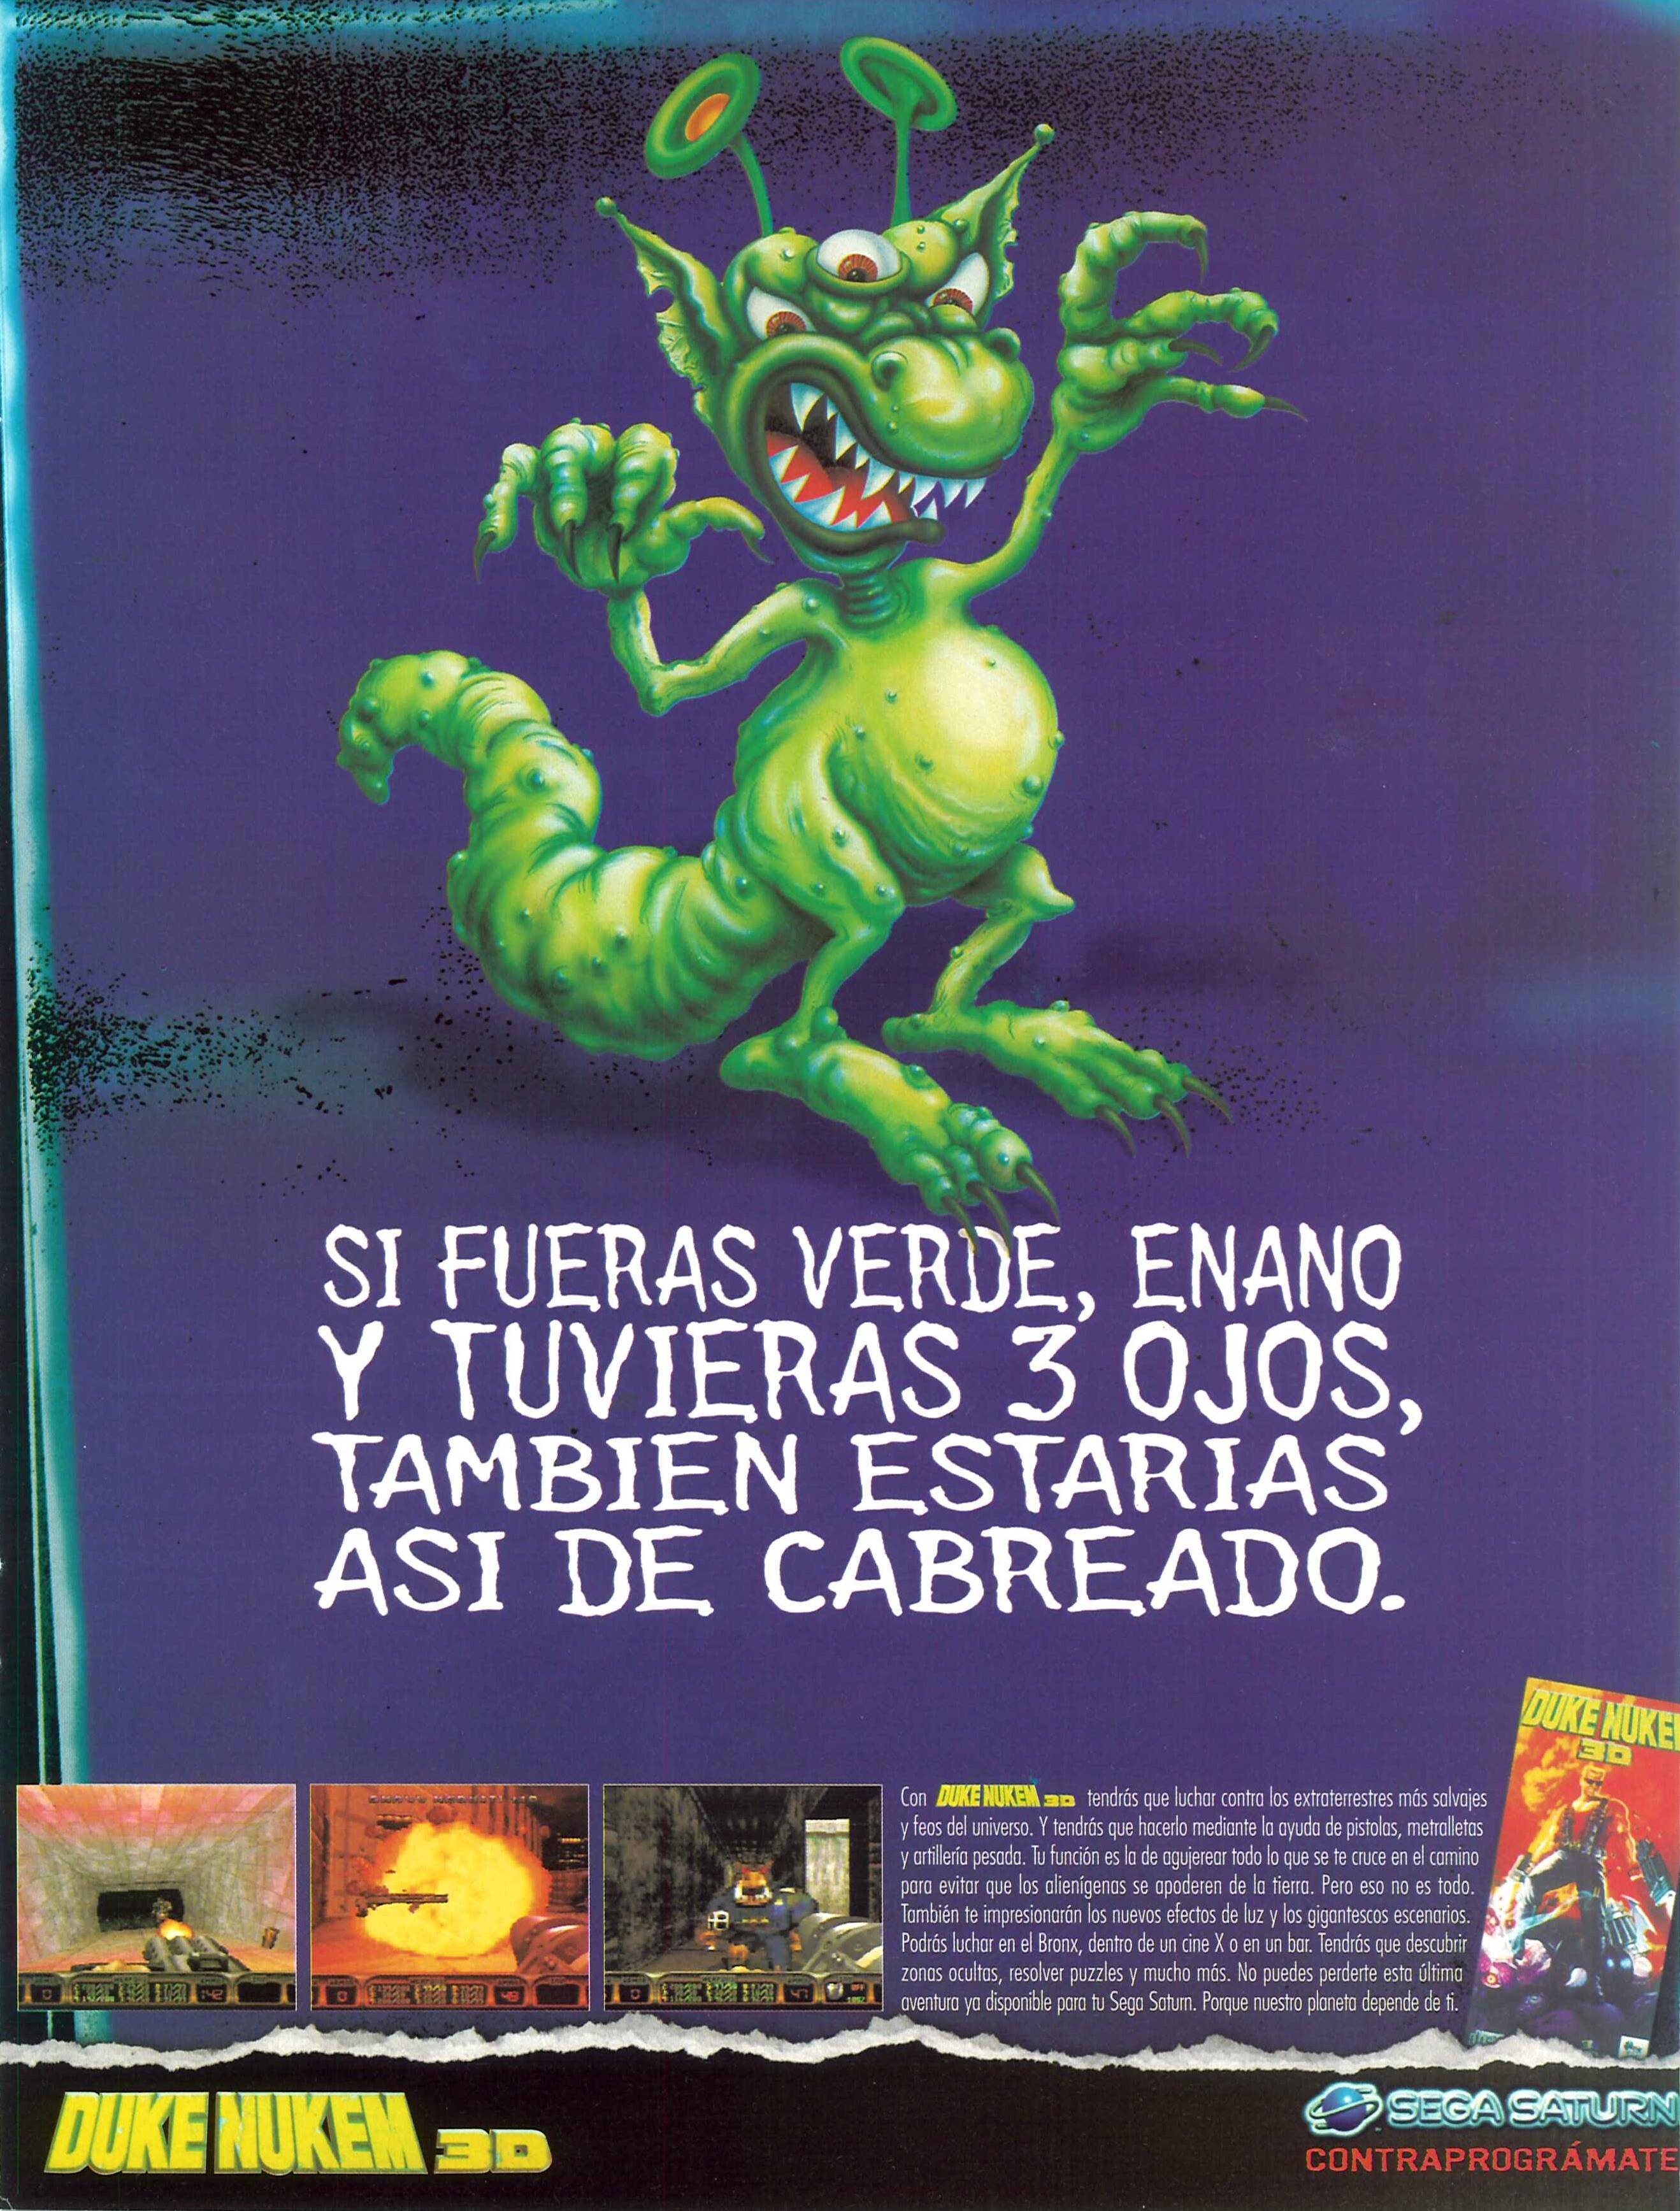 1997 11 - Duke Nukem 3D.jpg